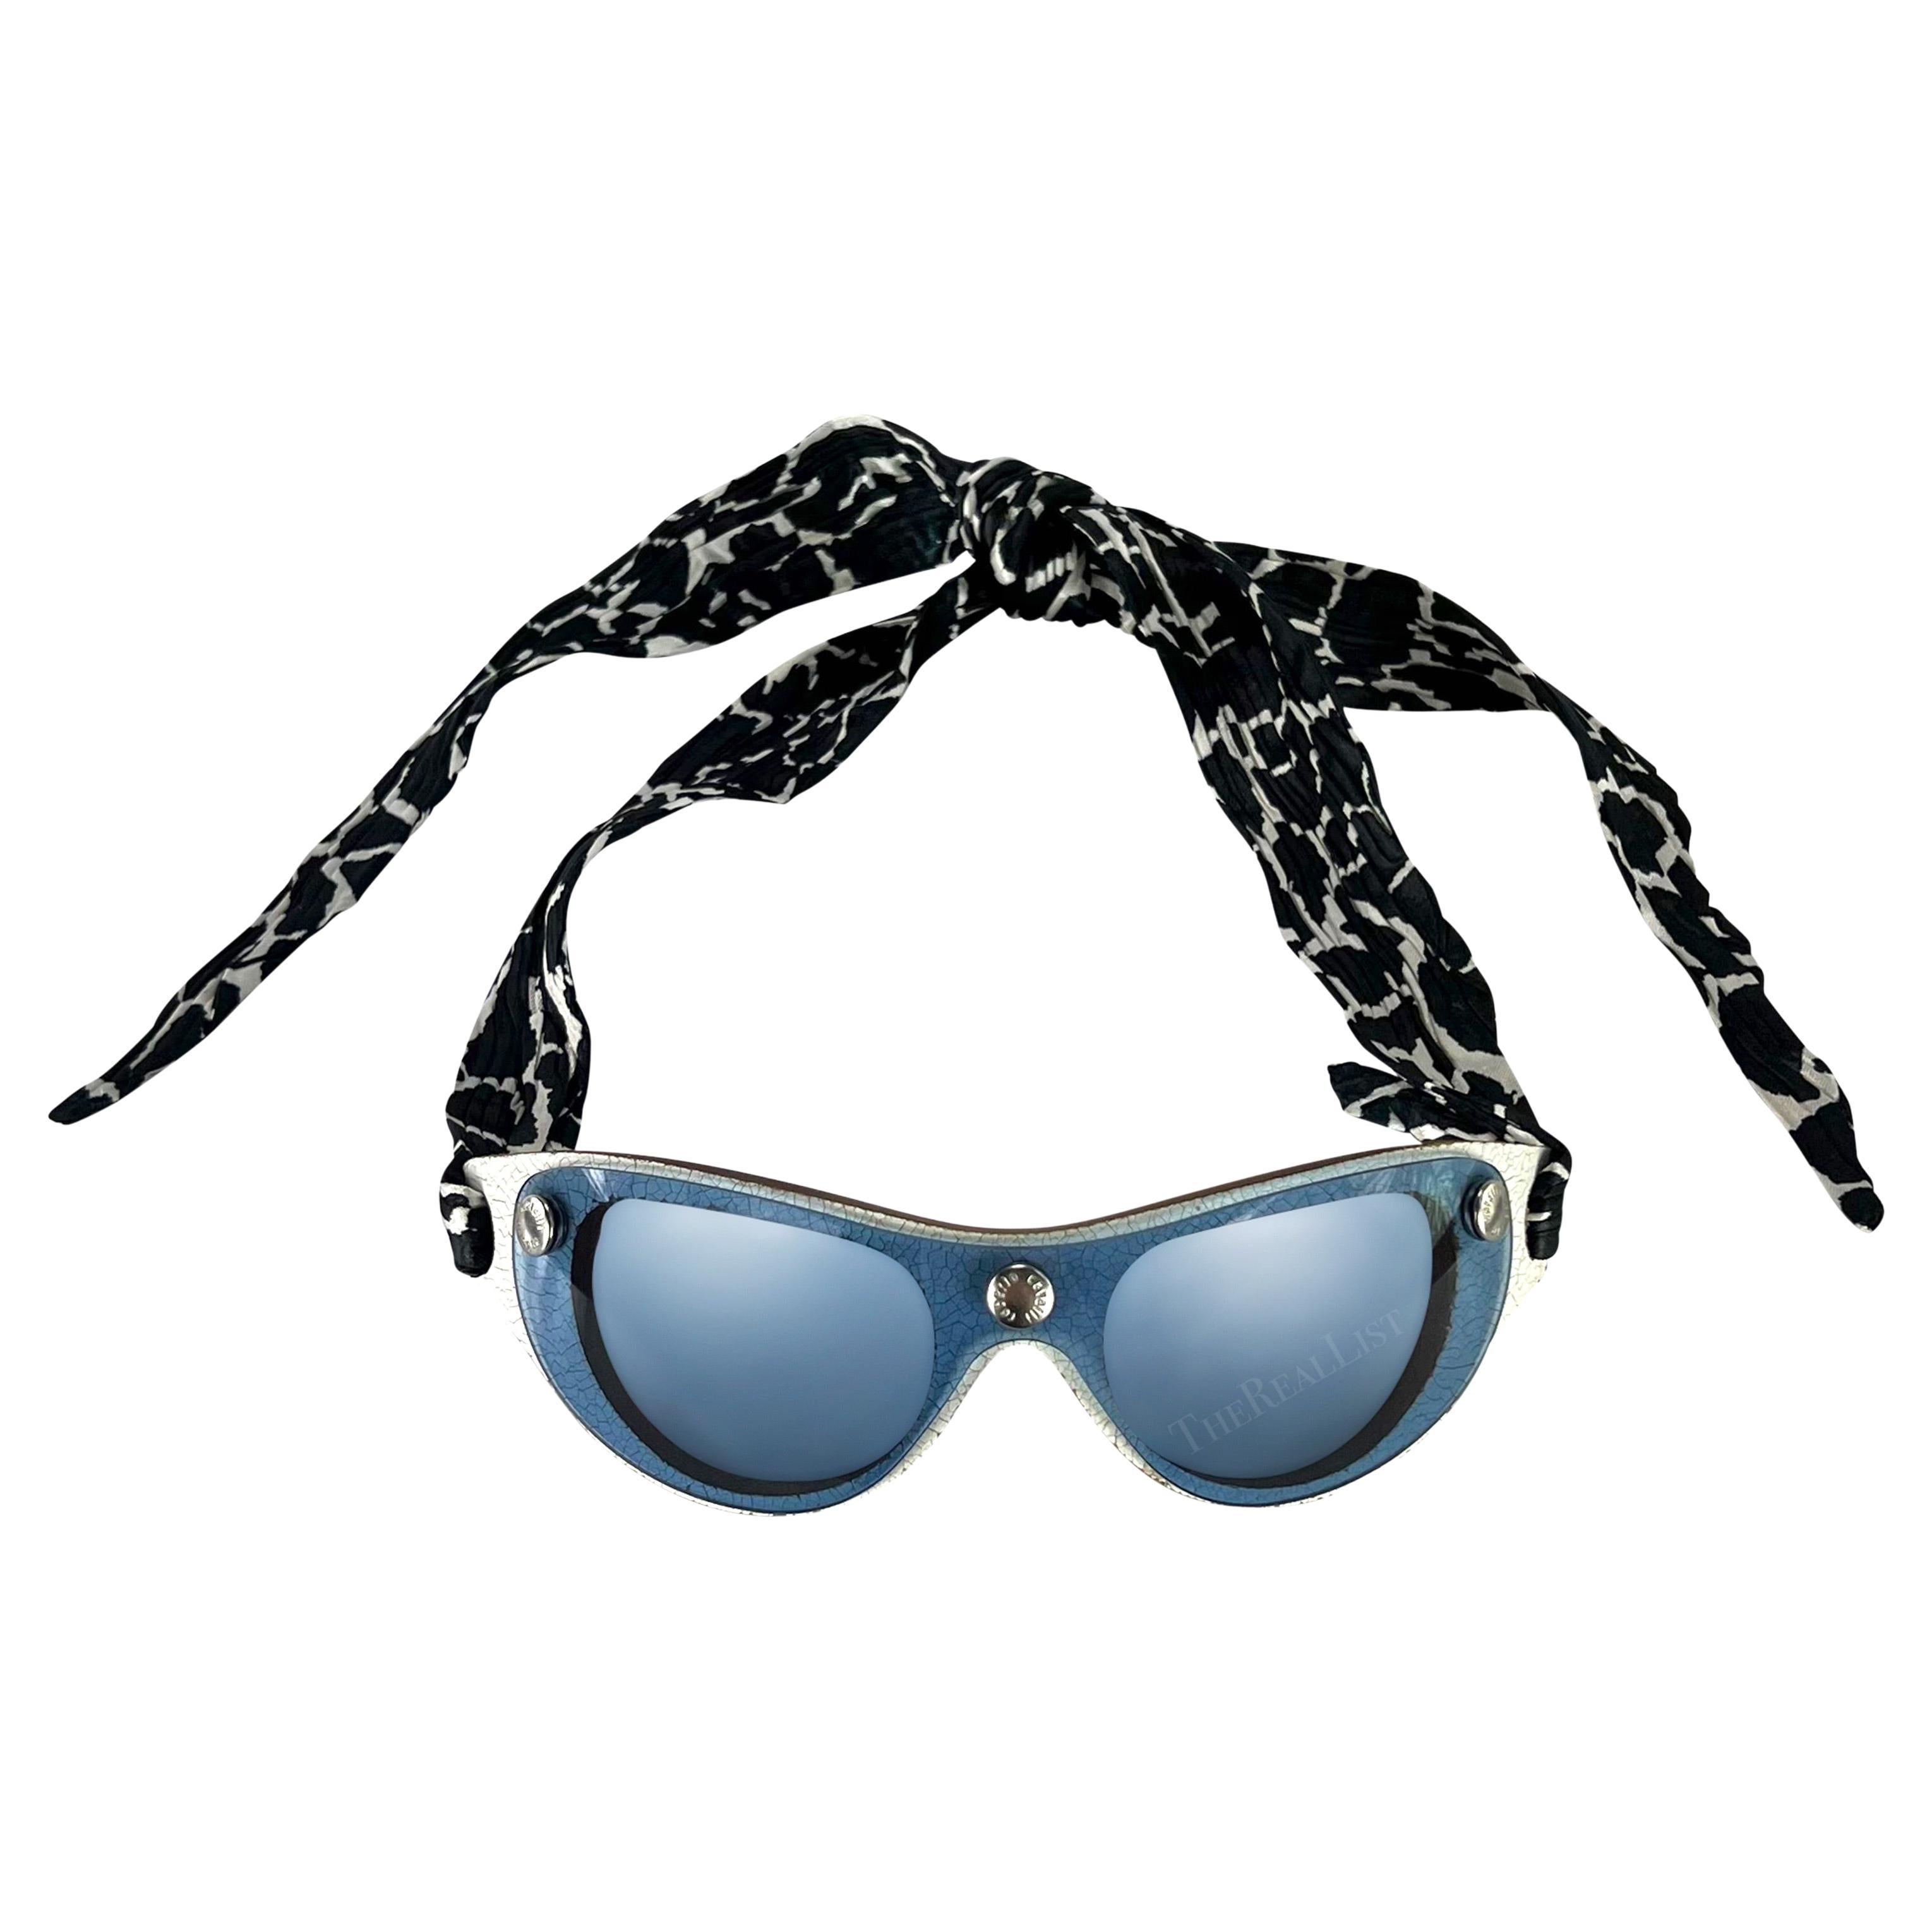 S/S 2001 Roberto Cavalli Ad Blue Shield Silk Scarf Wrap Sunglasses